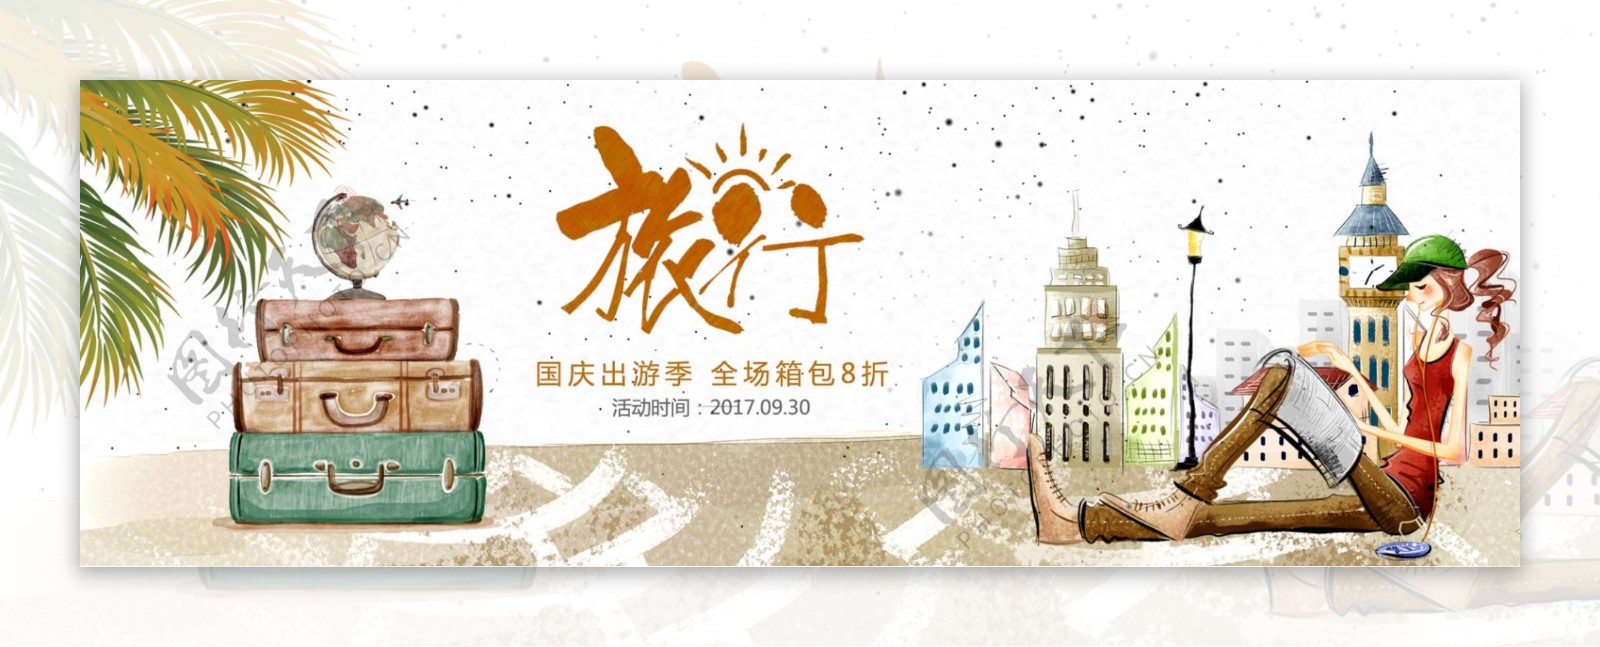 电商淘宝天猫国庆出游季旅行箱包促销海报banner模板旅行自由